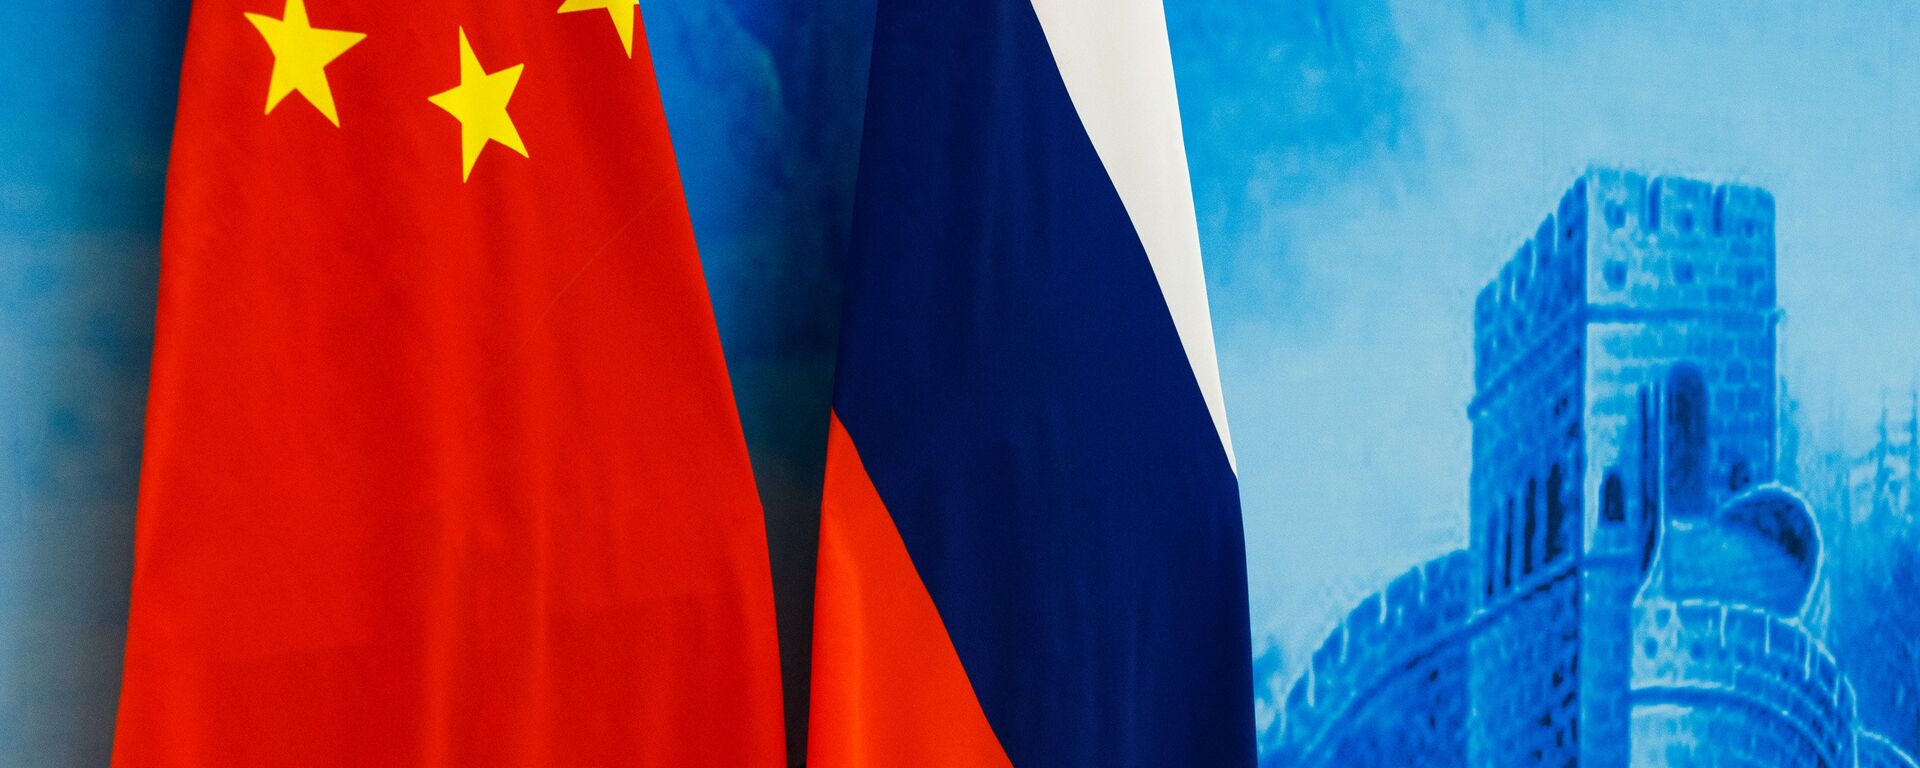 Las banderas de Rusia y China - Sputnik Mundo, 1920, 22.01.2021